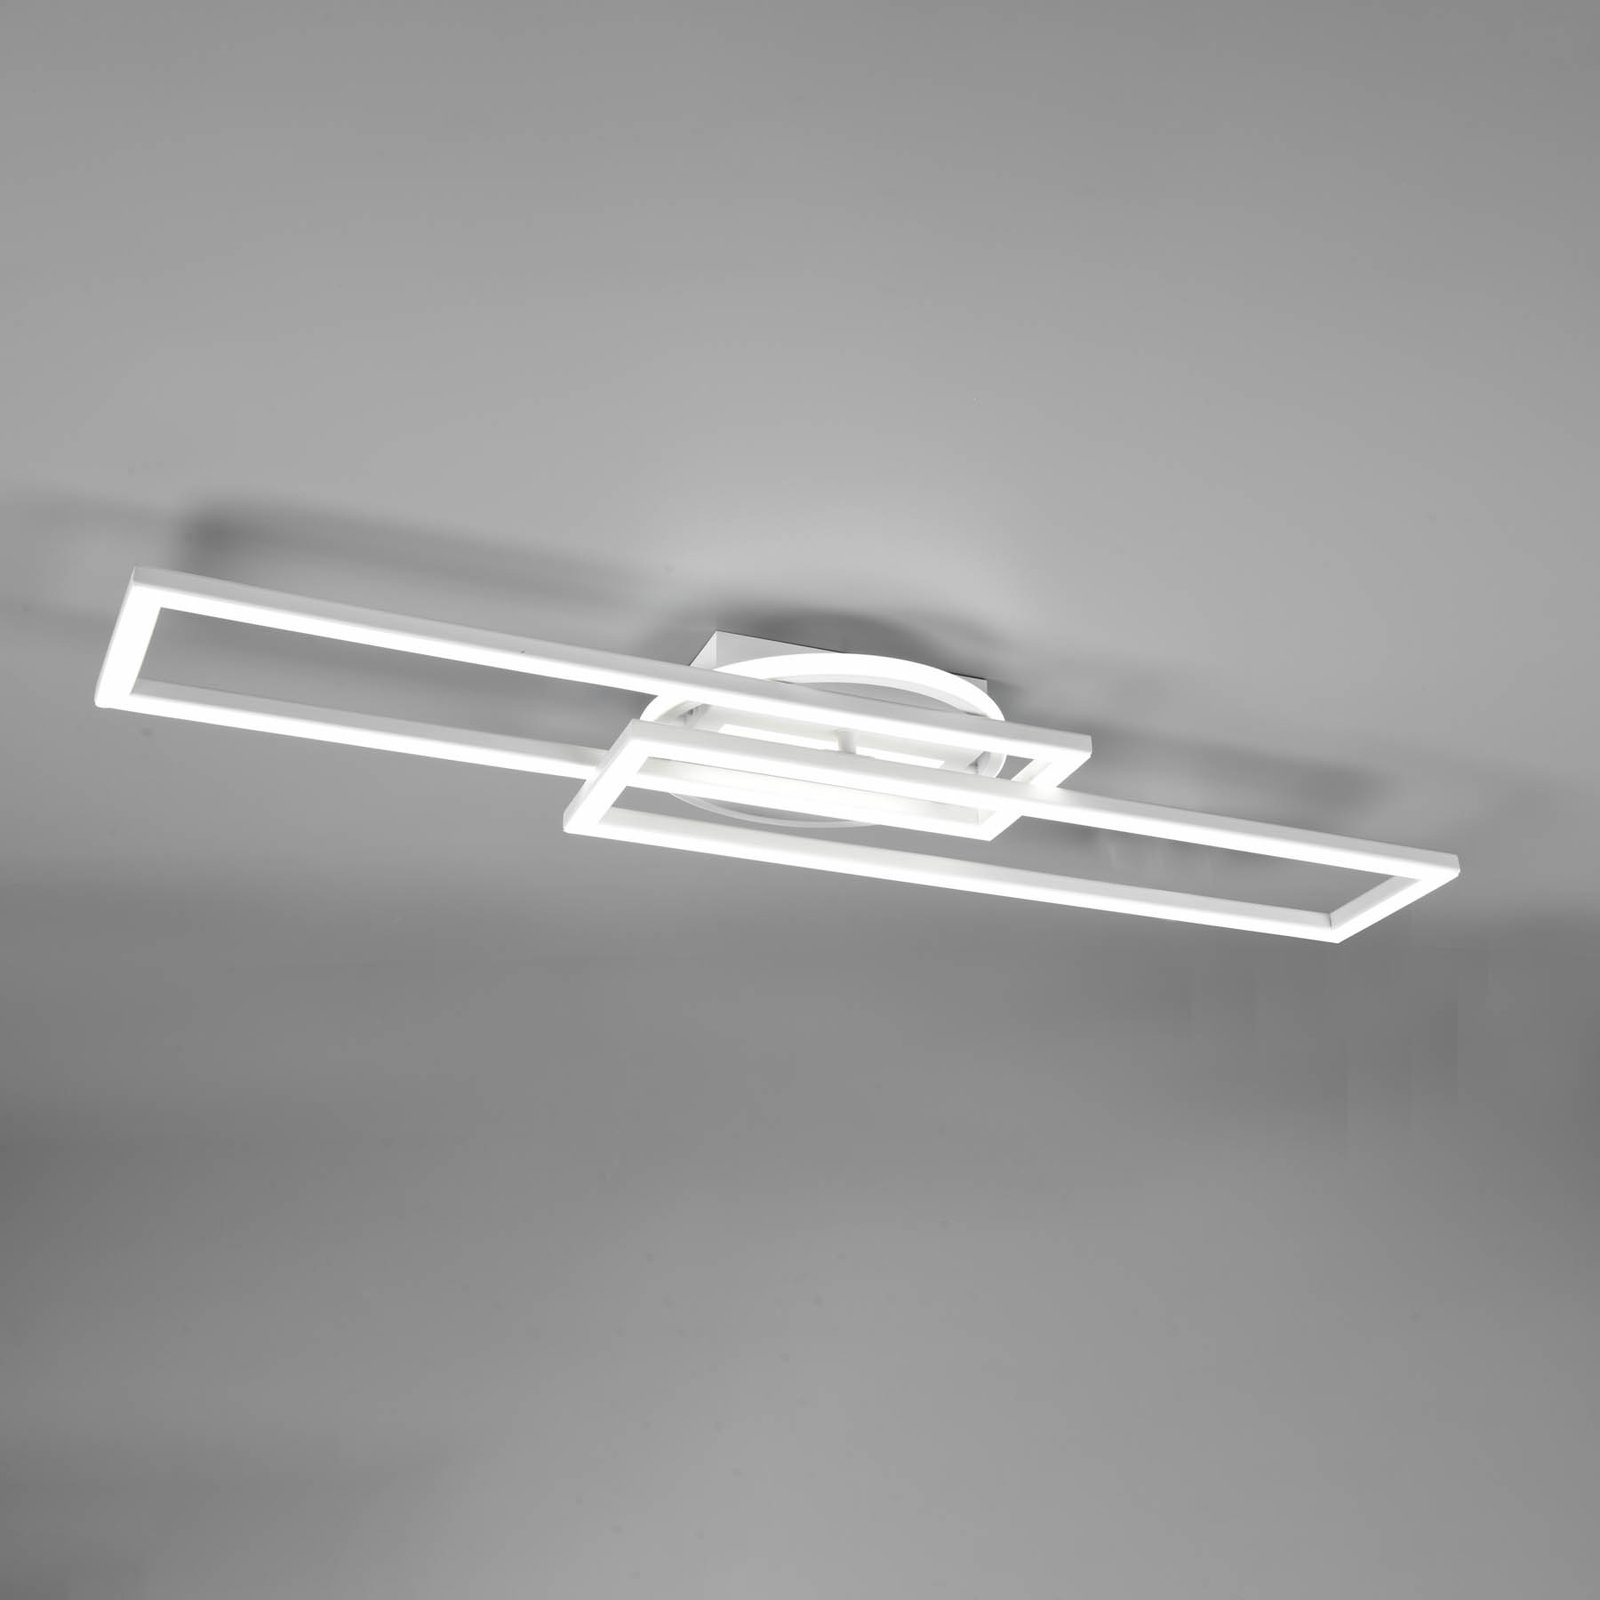 LED lubinis šviestuvas "Twister", pasukamas, nuotolinis, baltas